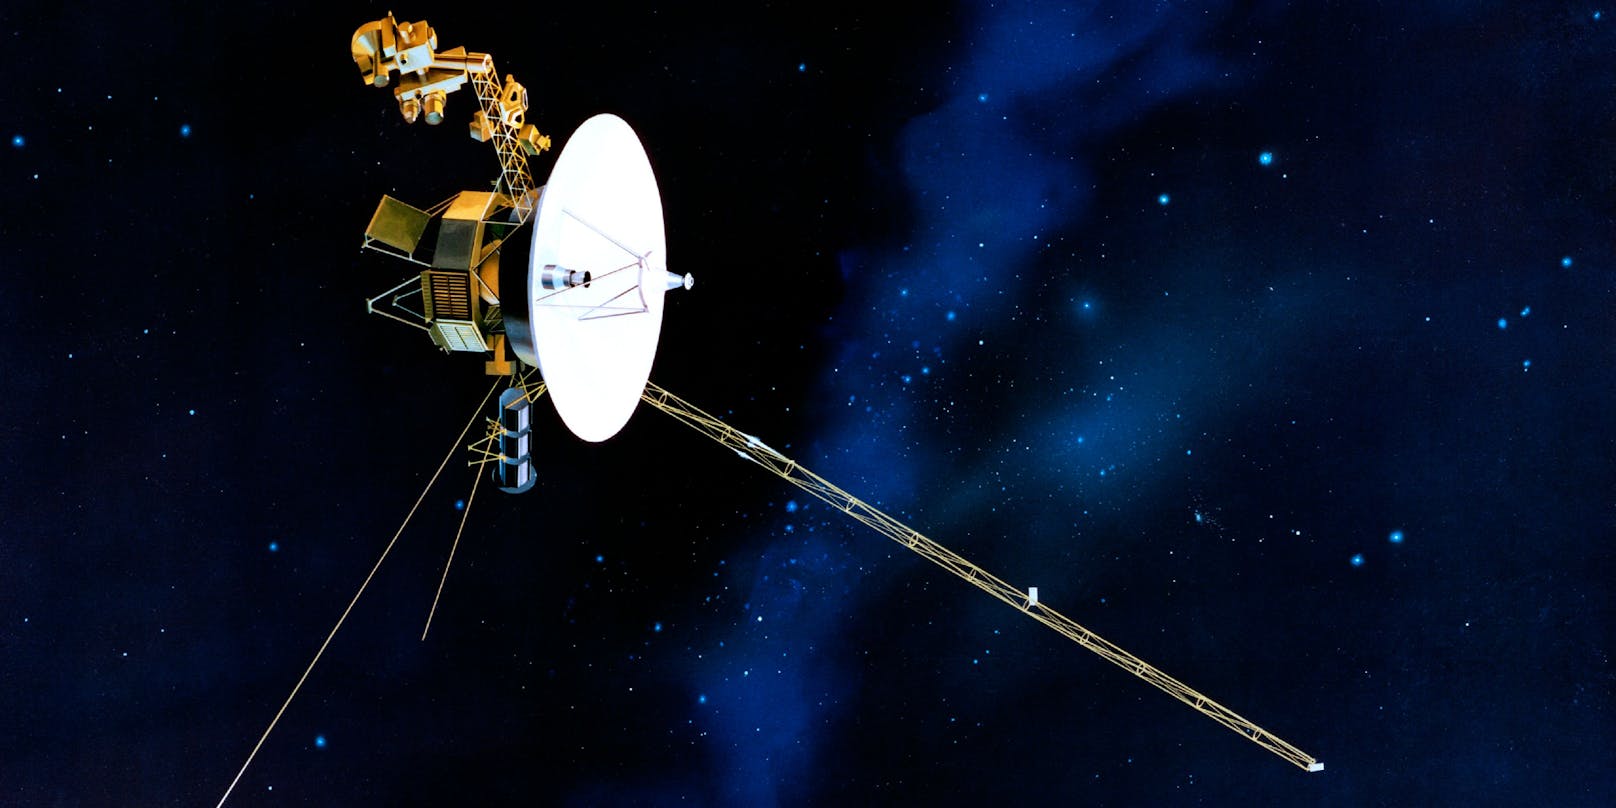 Die Raumsonde Voyager 1 liefert Einblicke in die Tiefen des Weltalls außerhalb unseres Sonnensystems.